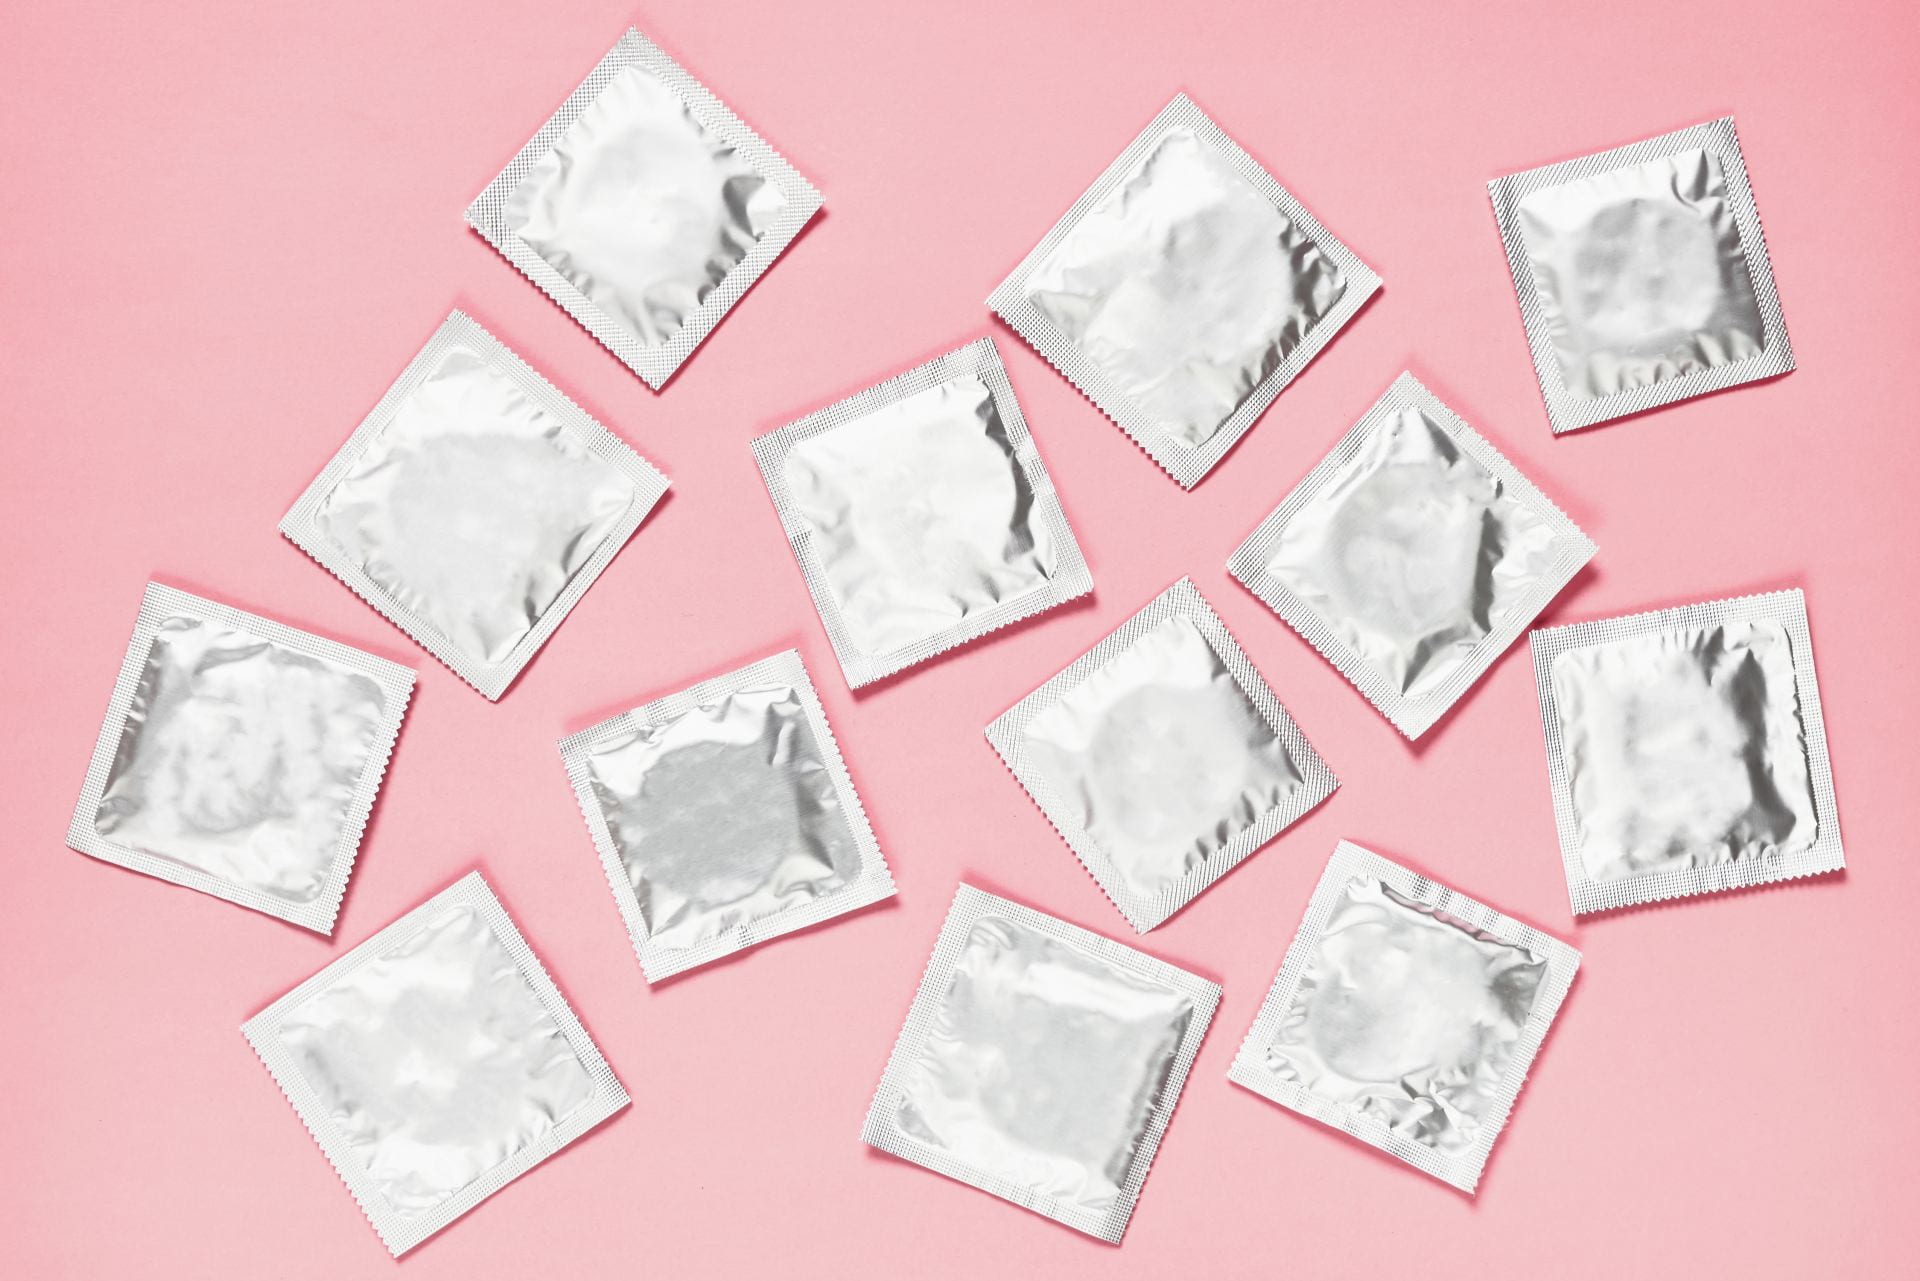 decorative art of condoms